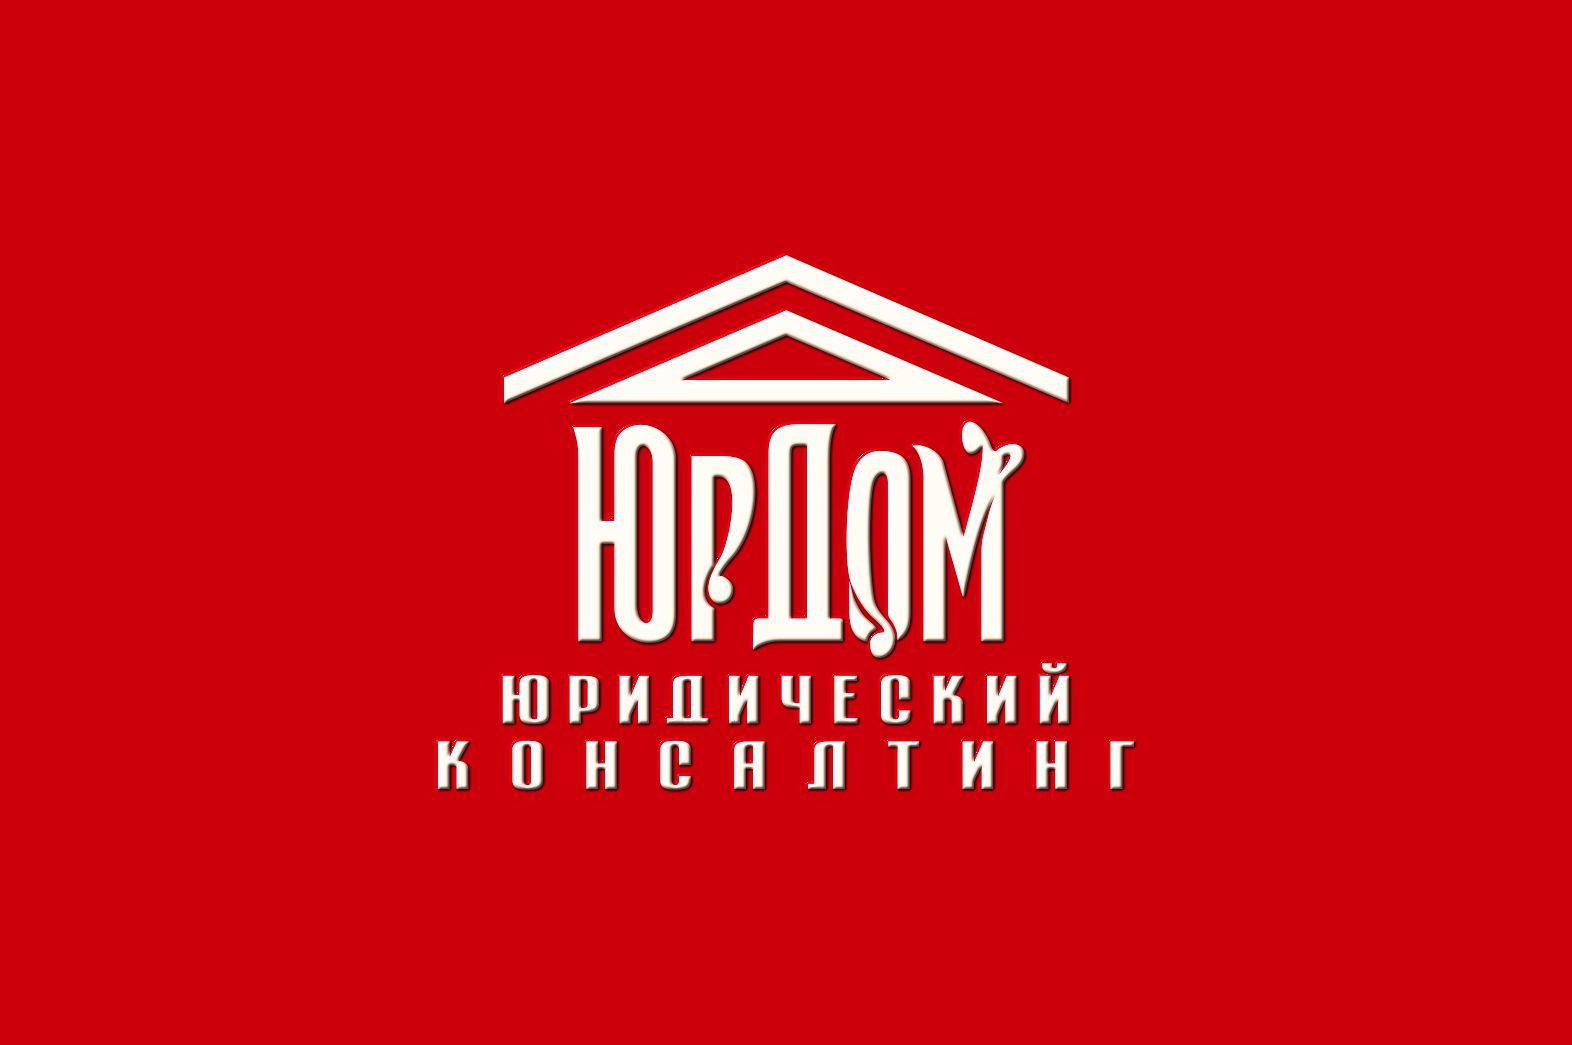 Логотип для ЮрДом. Юридический консалтинг - дизайнер graphin4ik